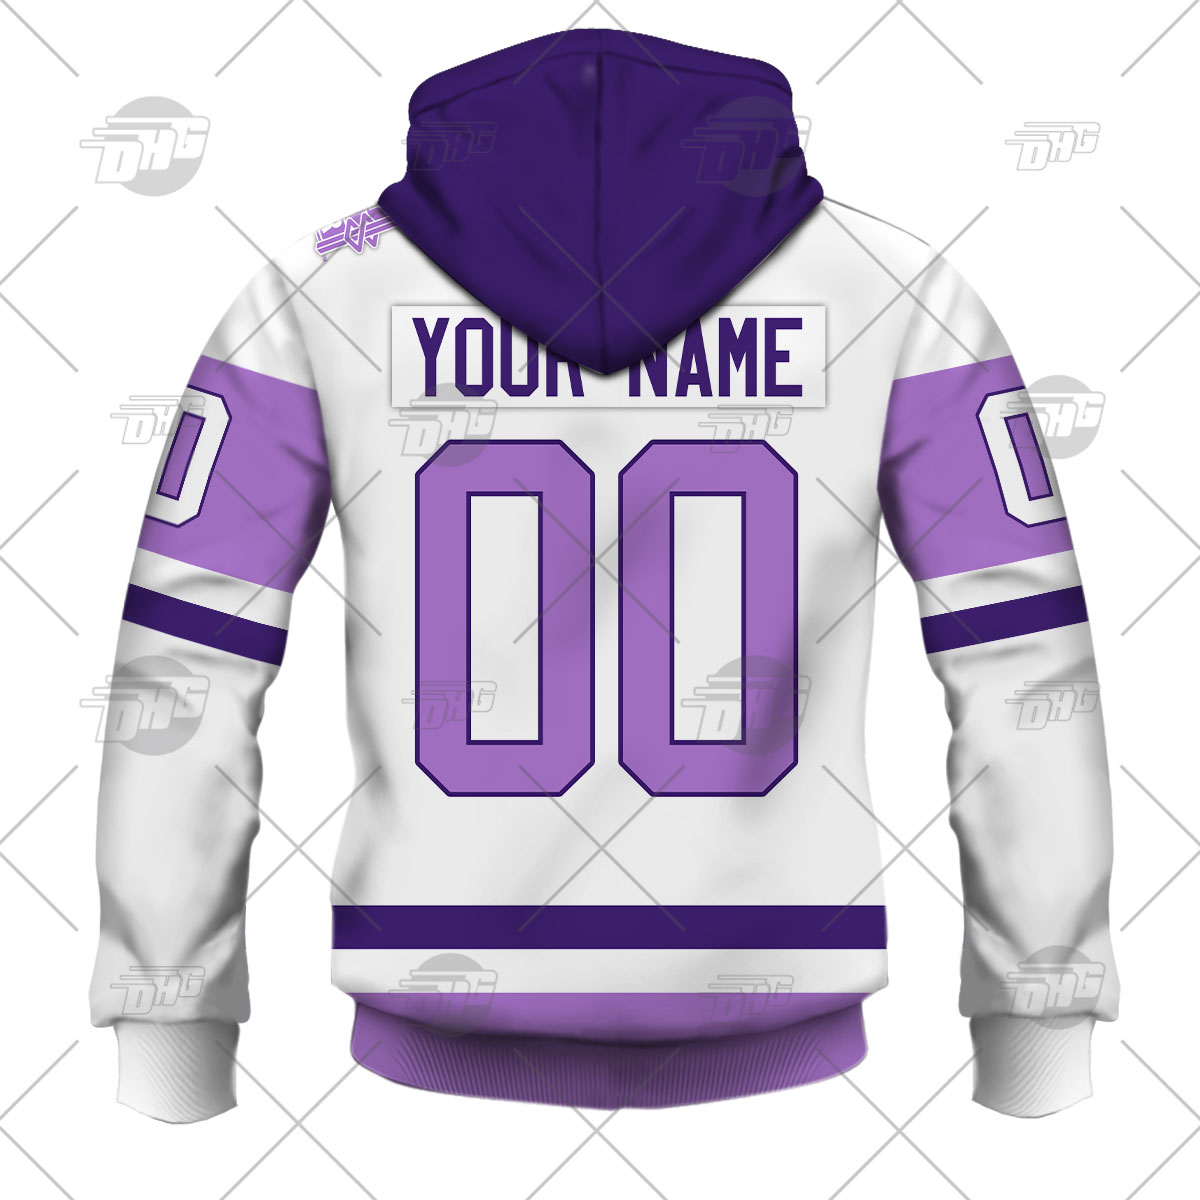 Personalized NHL Jersey Seattle Kraken White/Purple Hockey Fights